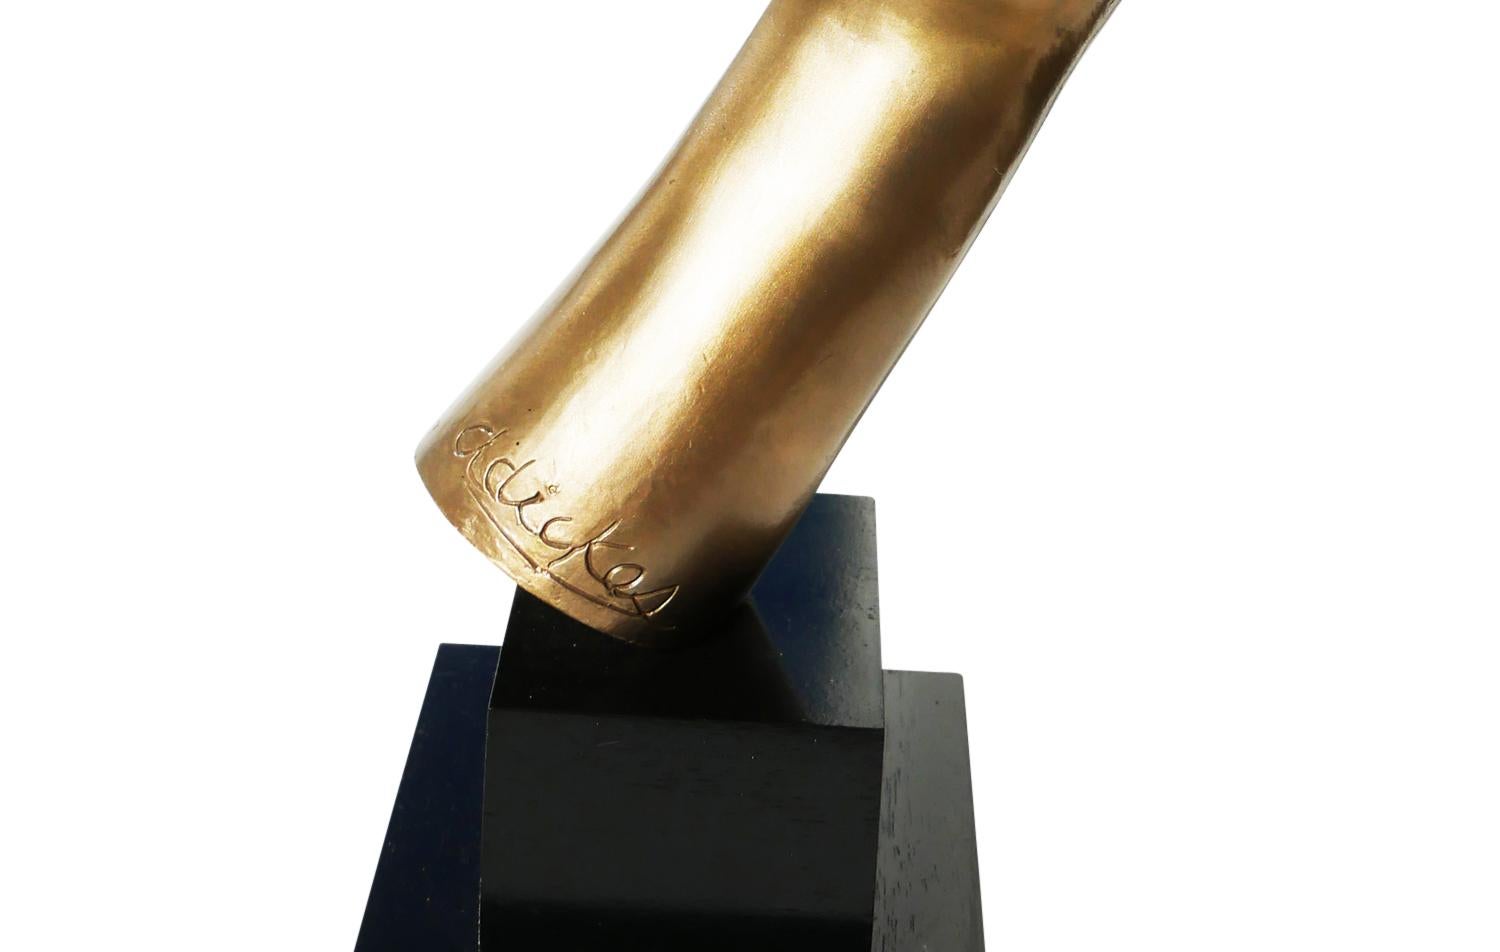 Sculpture figurative abstraite et moderniste en bronze de l'artiste David Adickes, de Houston, au Texas. Cette sculpture représente un masque ou un visage abstrait soutenu par un bras. La sculpture principale repose sur une base en bois. Signé par